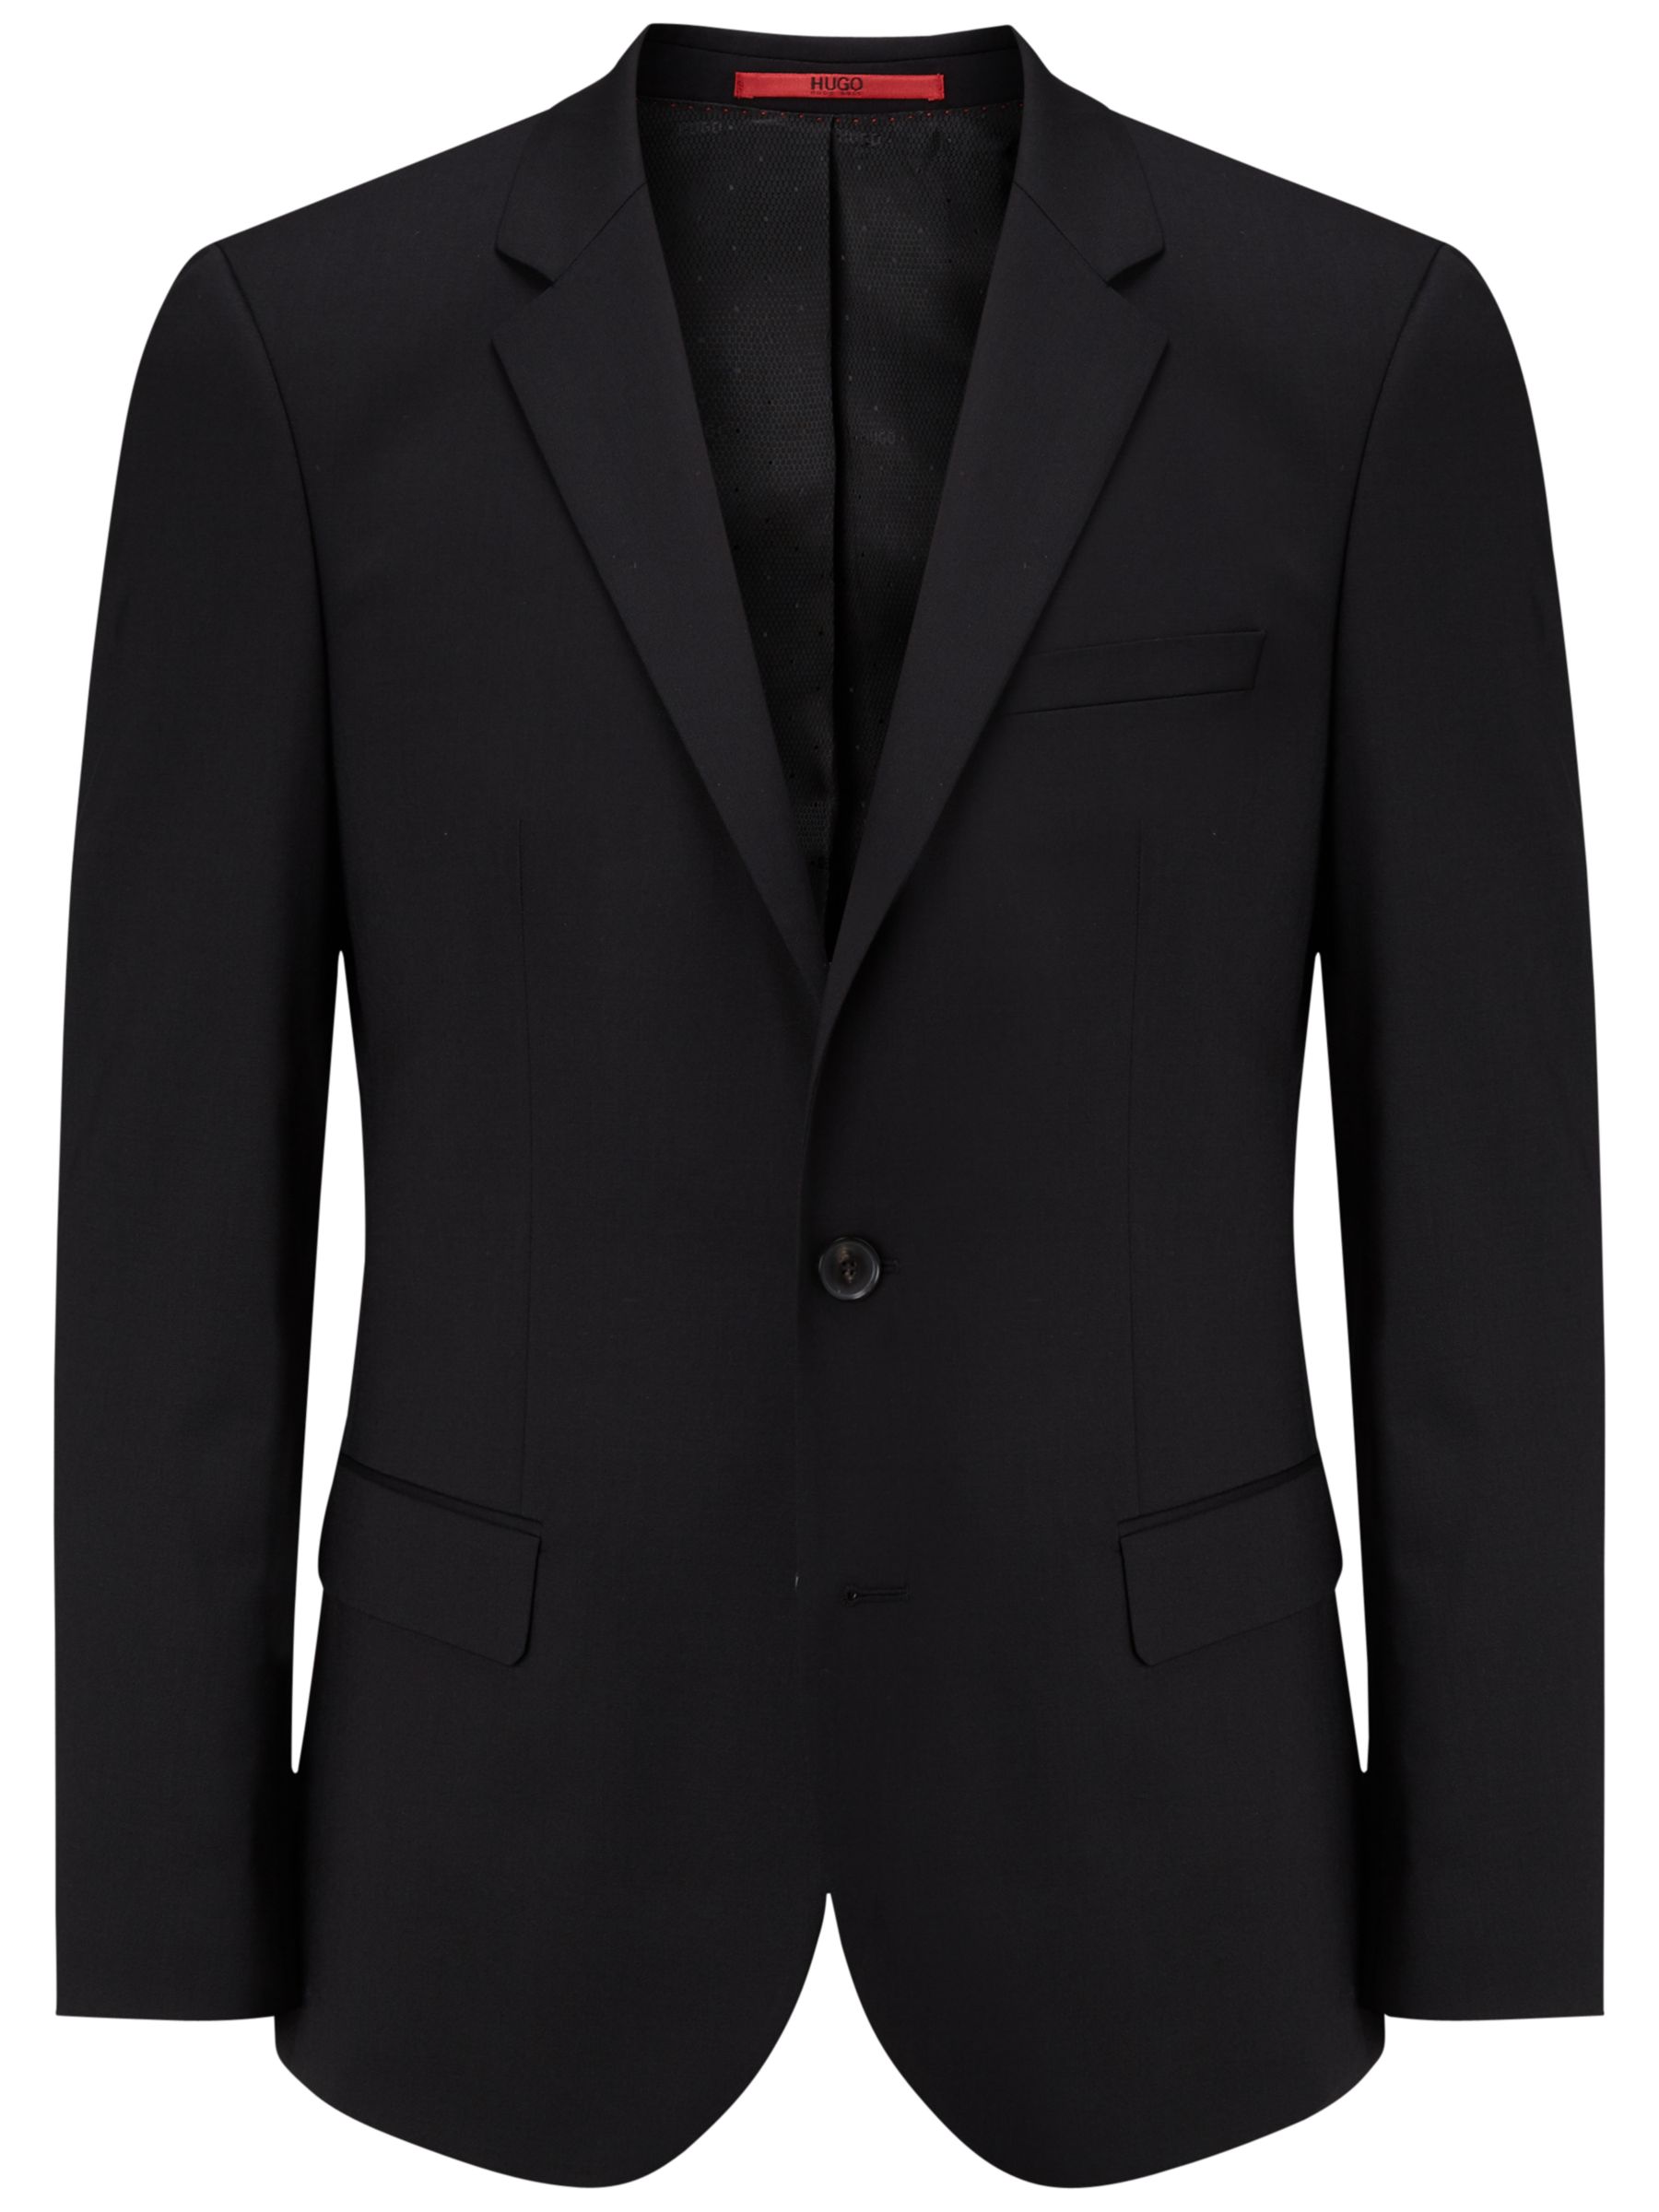 HUGO by Hugo Boss Hayes Slim Fit Suit Jacket, Black at John Lewis ...